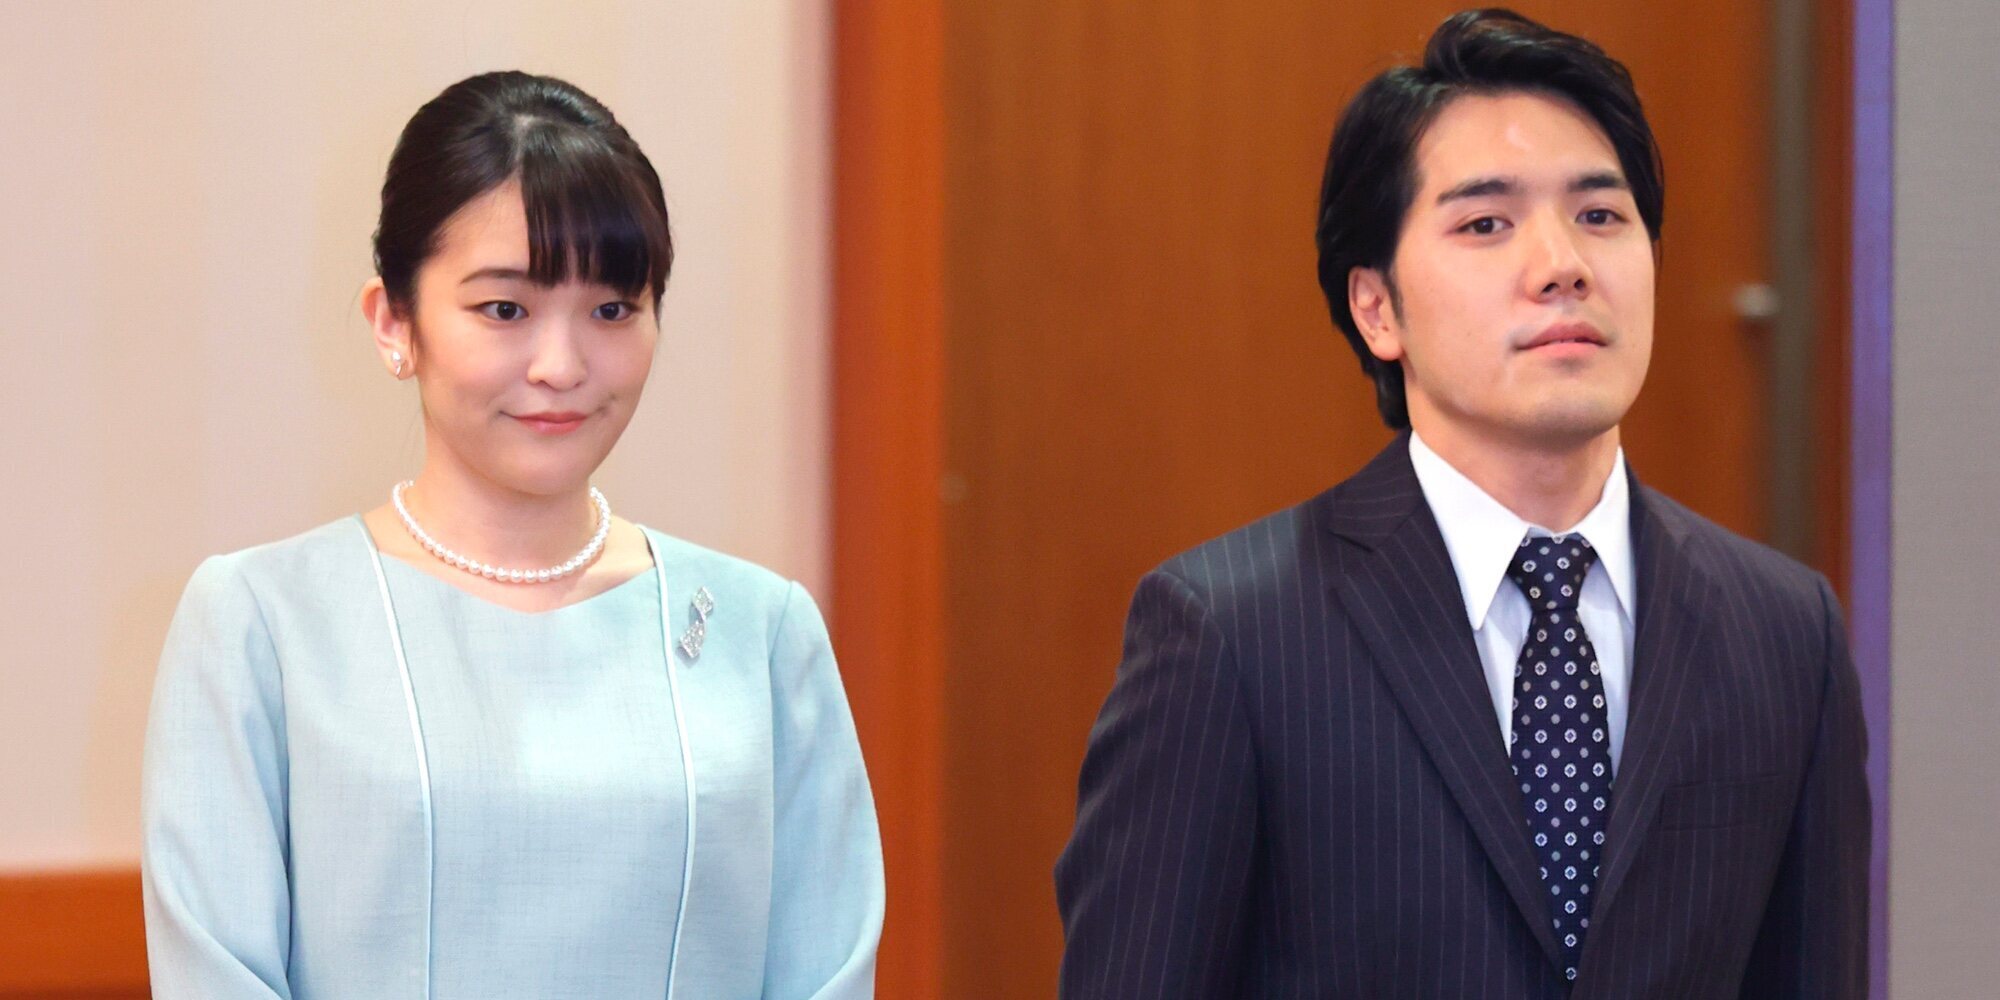 La agridulce boda de Mako de Japón y Kei Komuro: un trámite, conferencia de prensa y una emotiva despedida